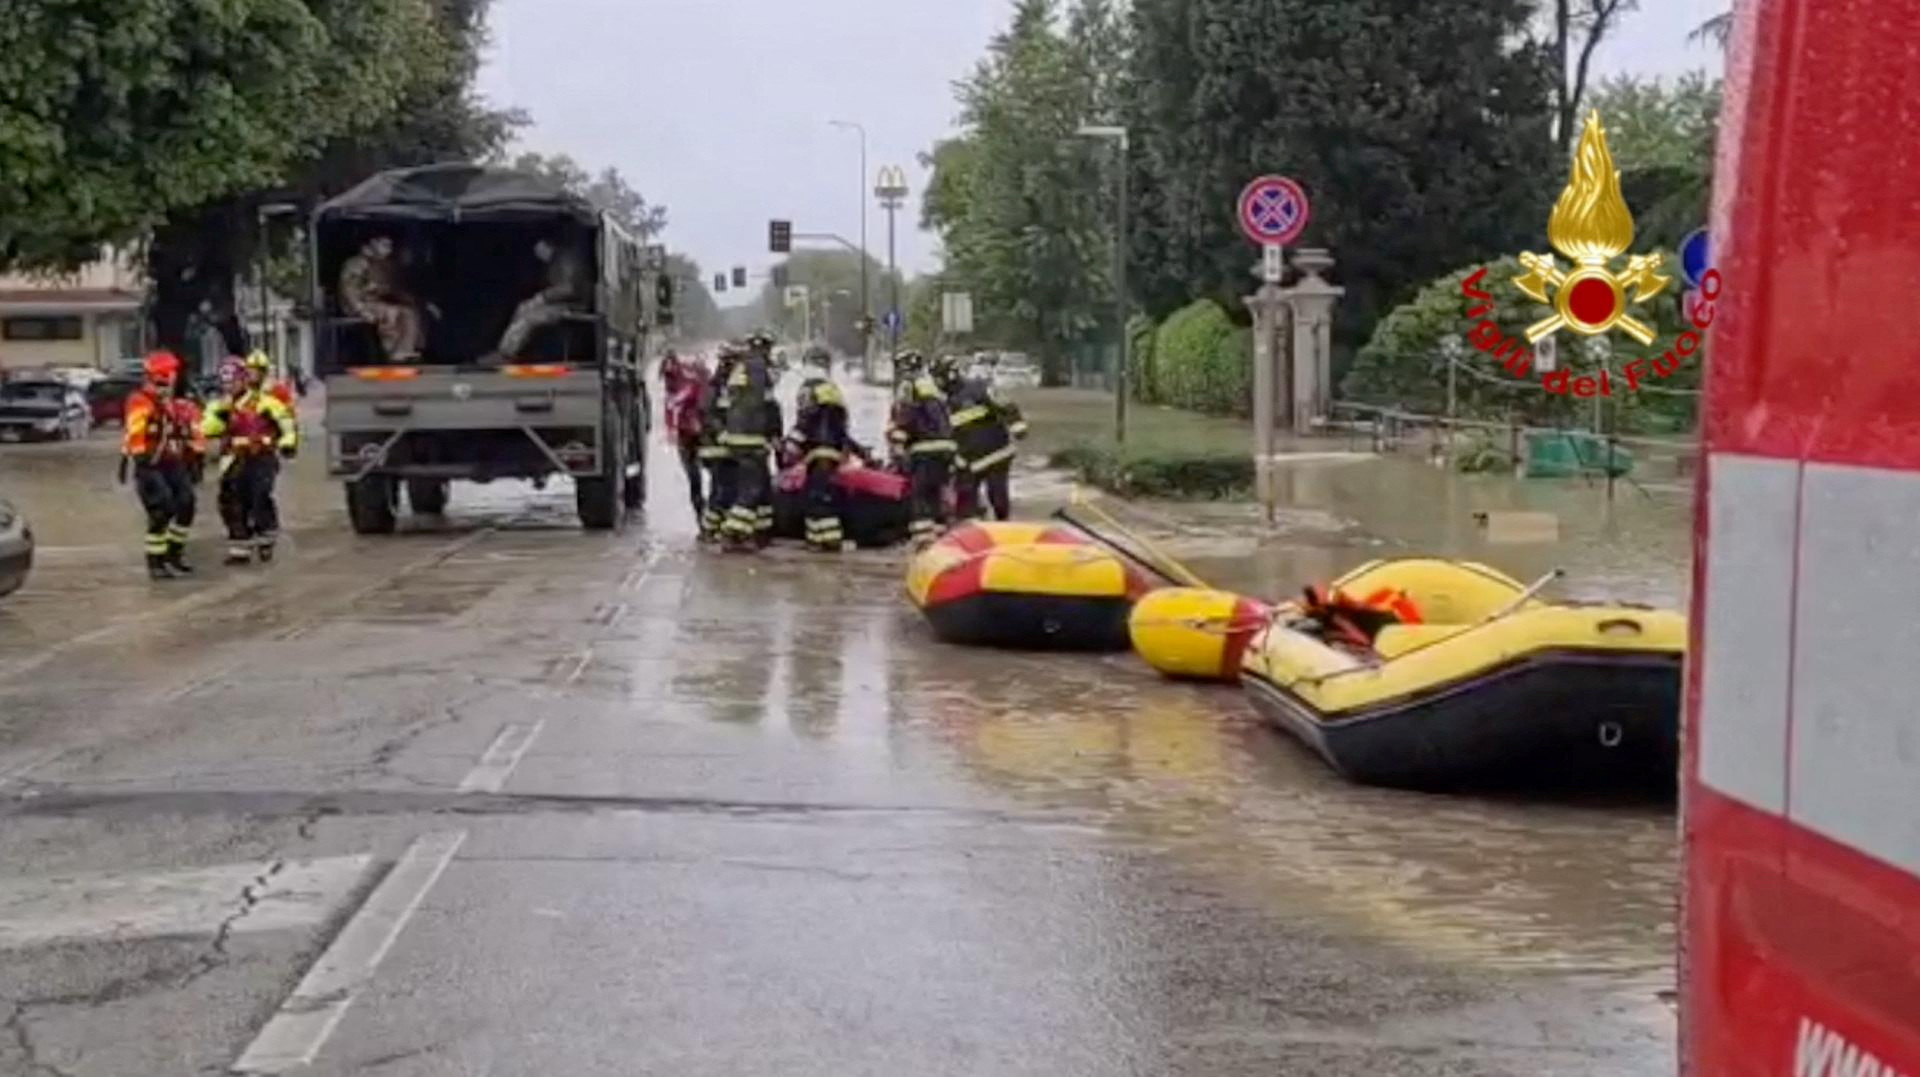 Las operaciones de rescate en Faenza (Vigili del Fuoco/REUTERS)